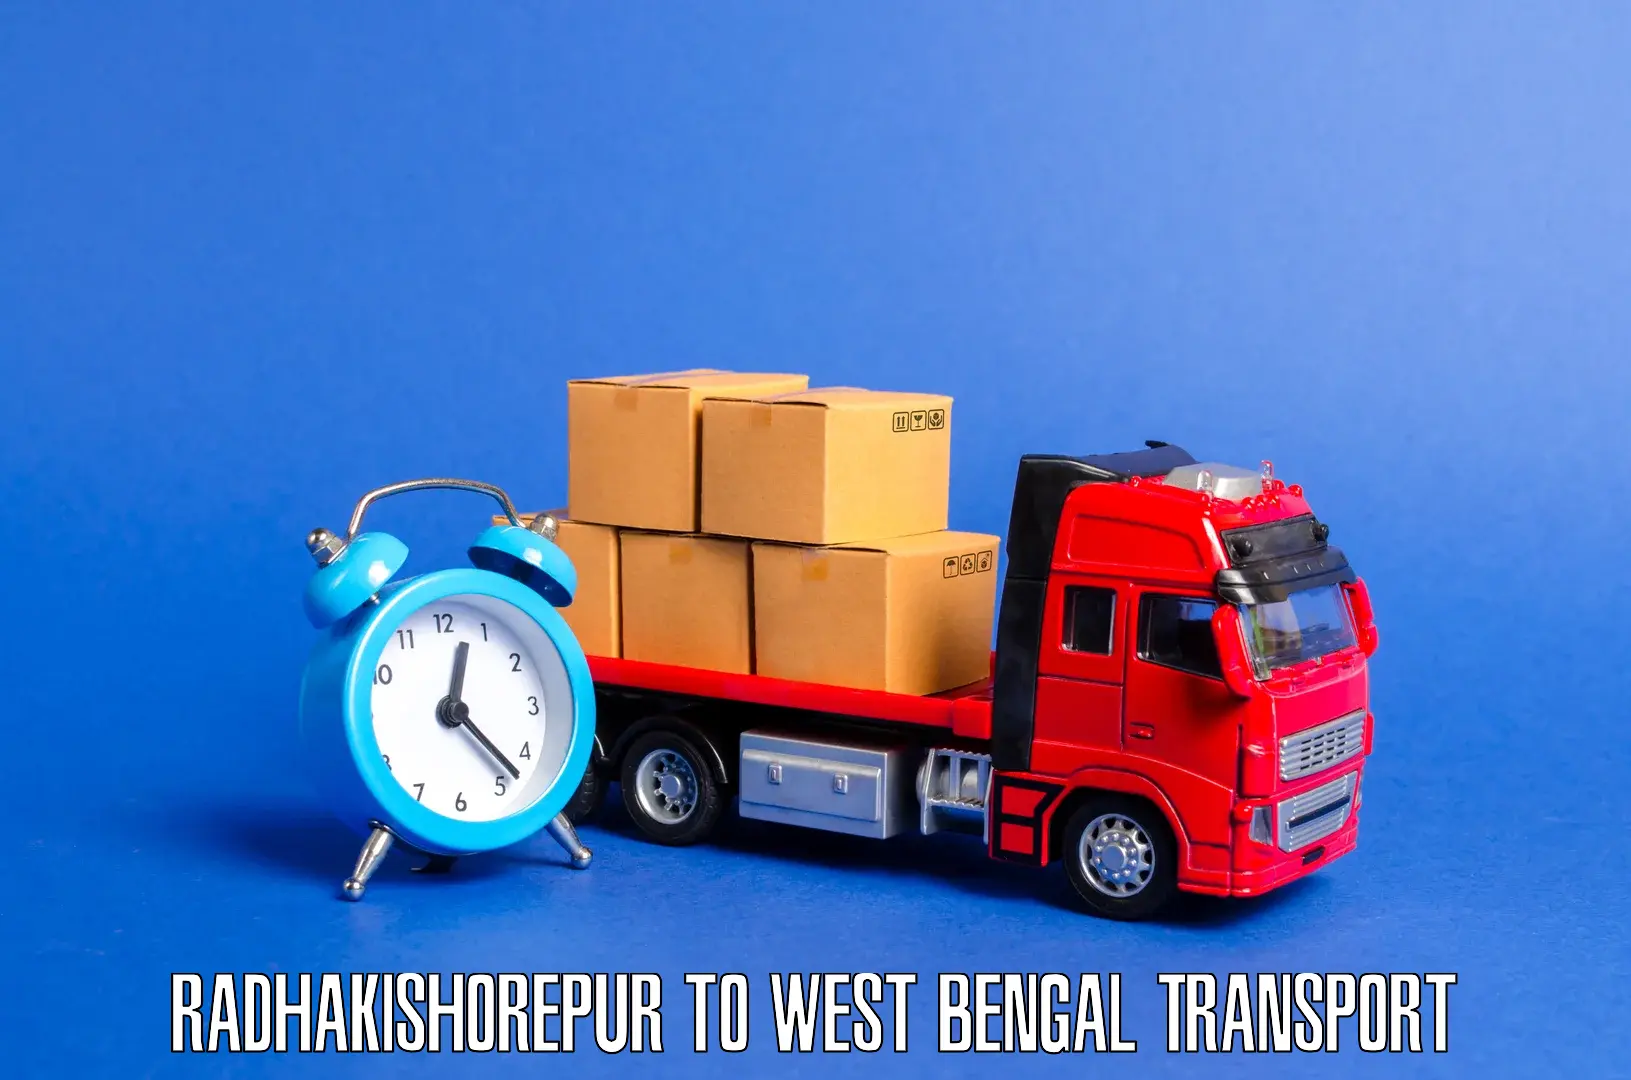 Interstate transport services Radhakishorepur to Nakashipara